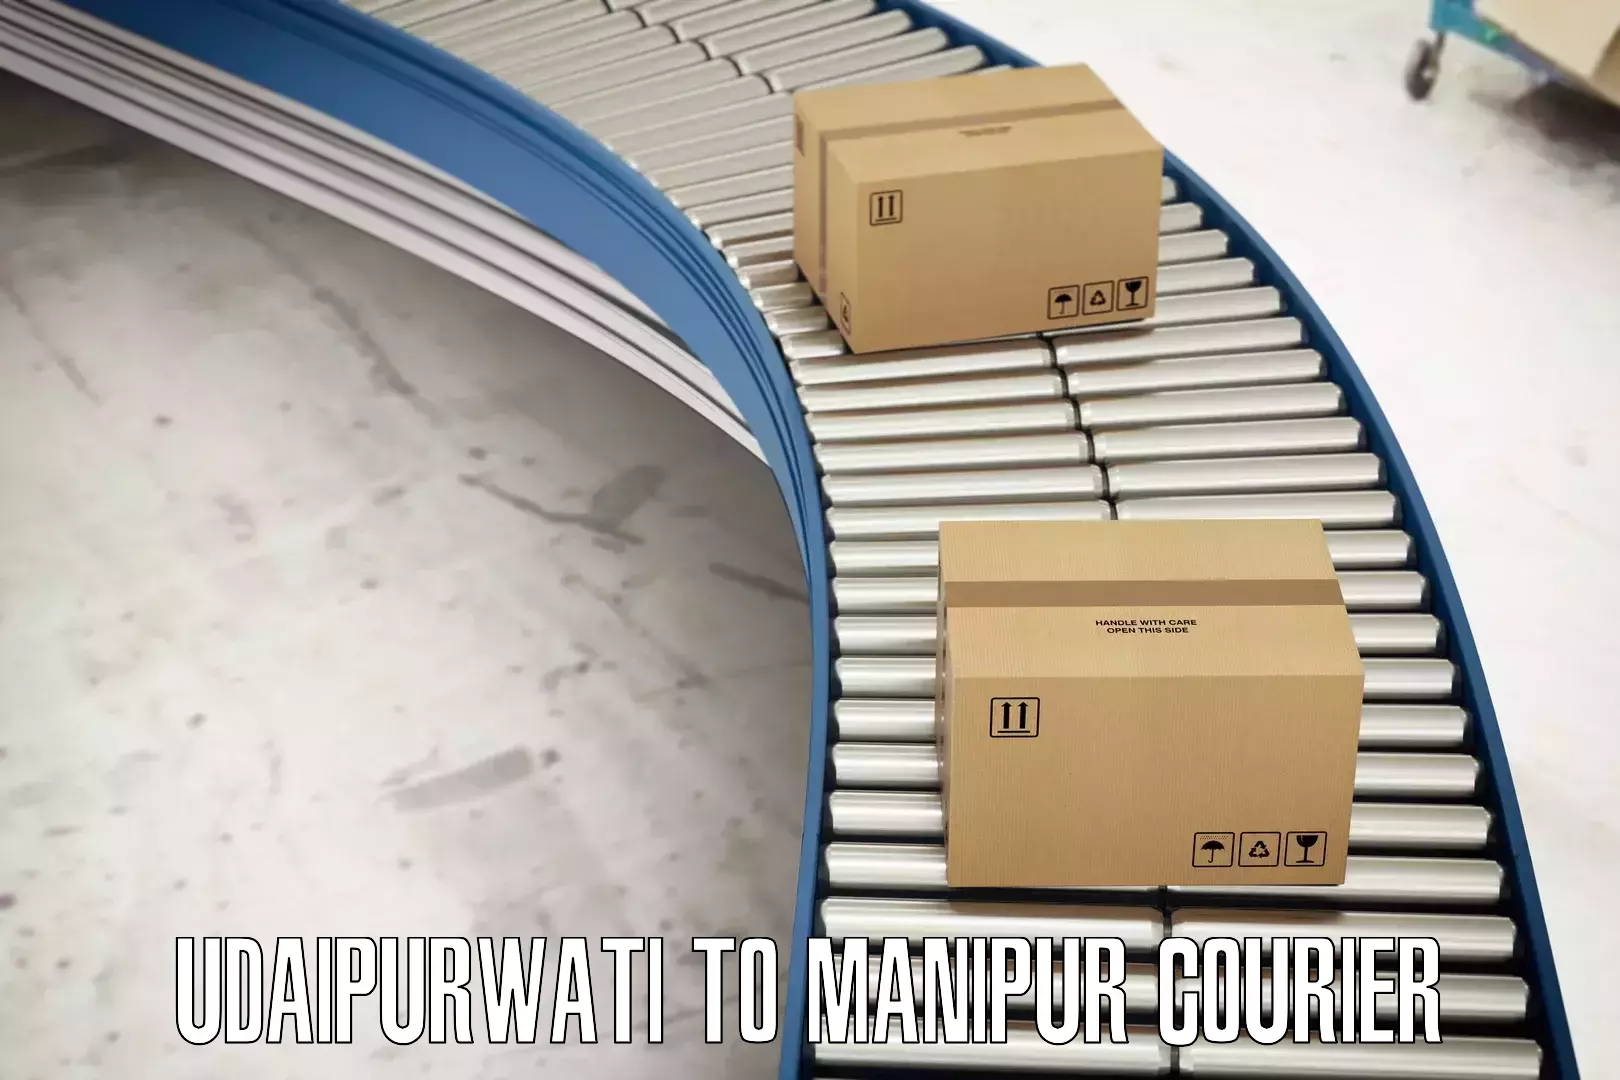 E-commerce fulfillment Udaipurwati to Churachandpur